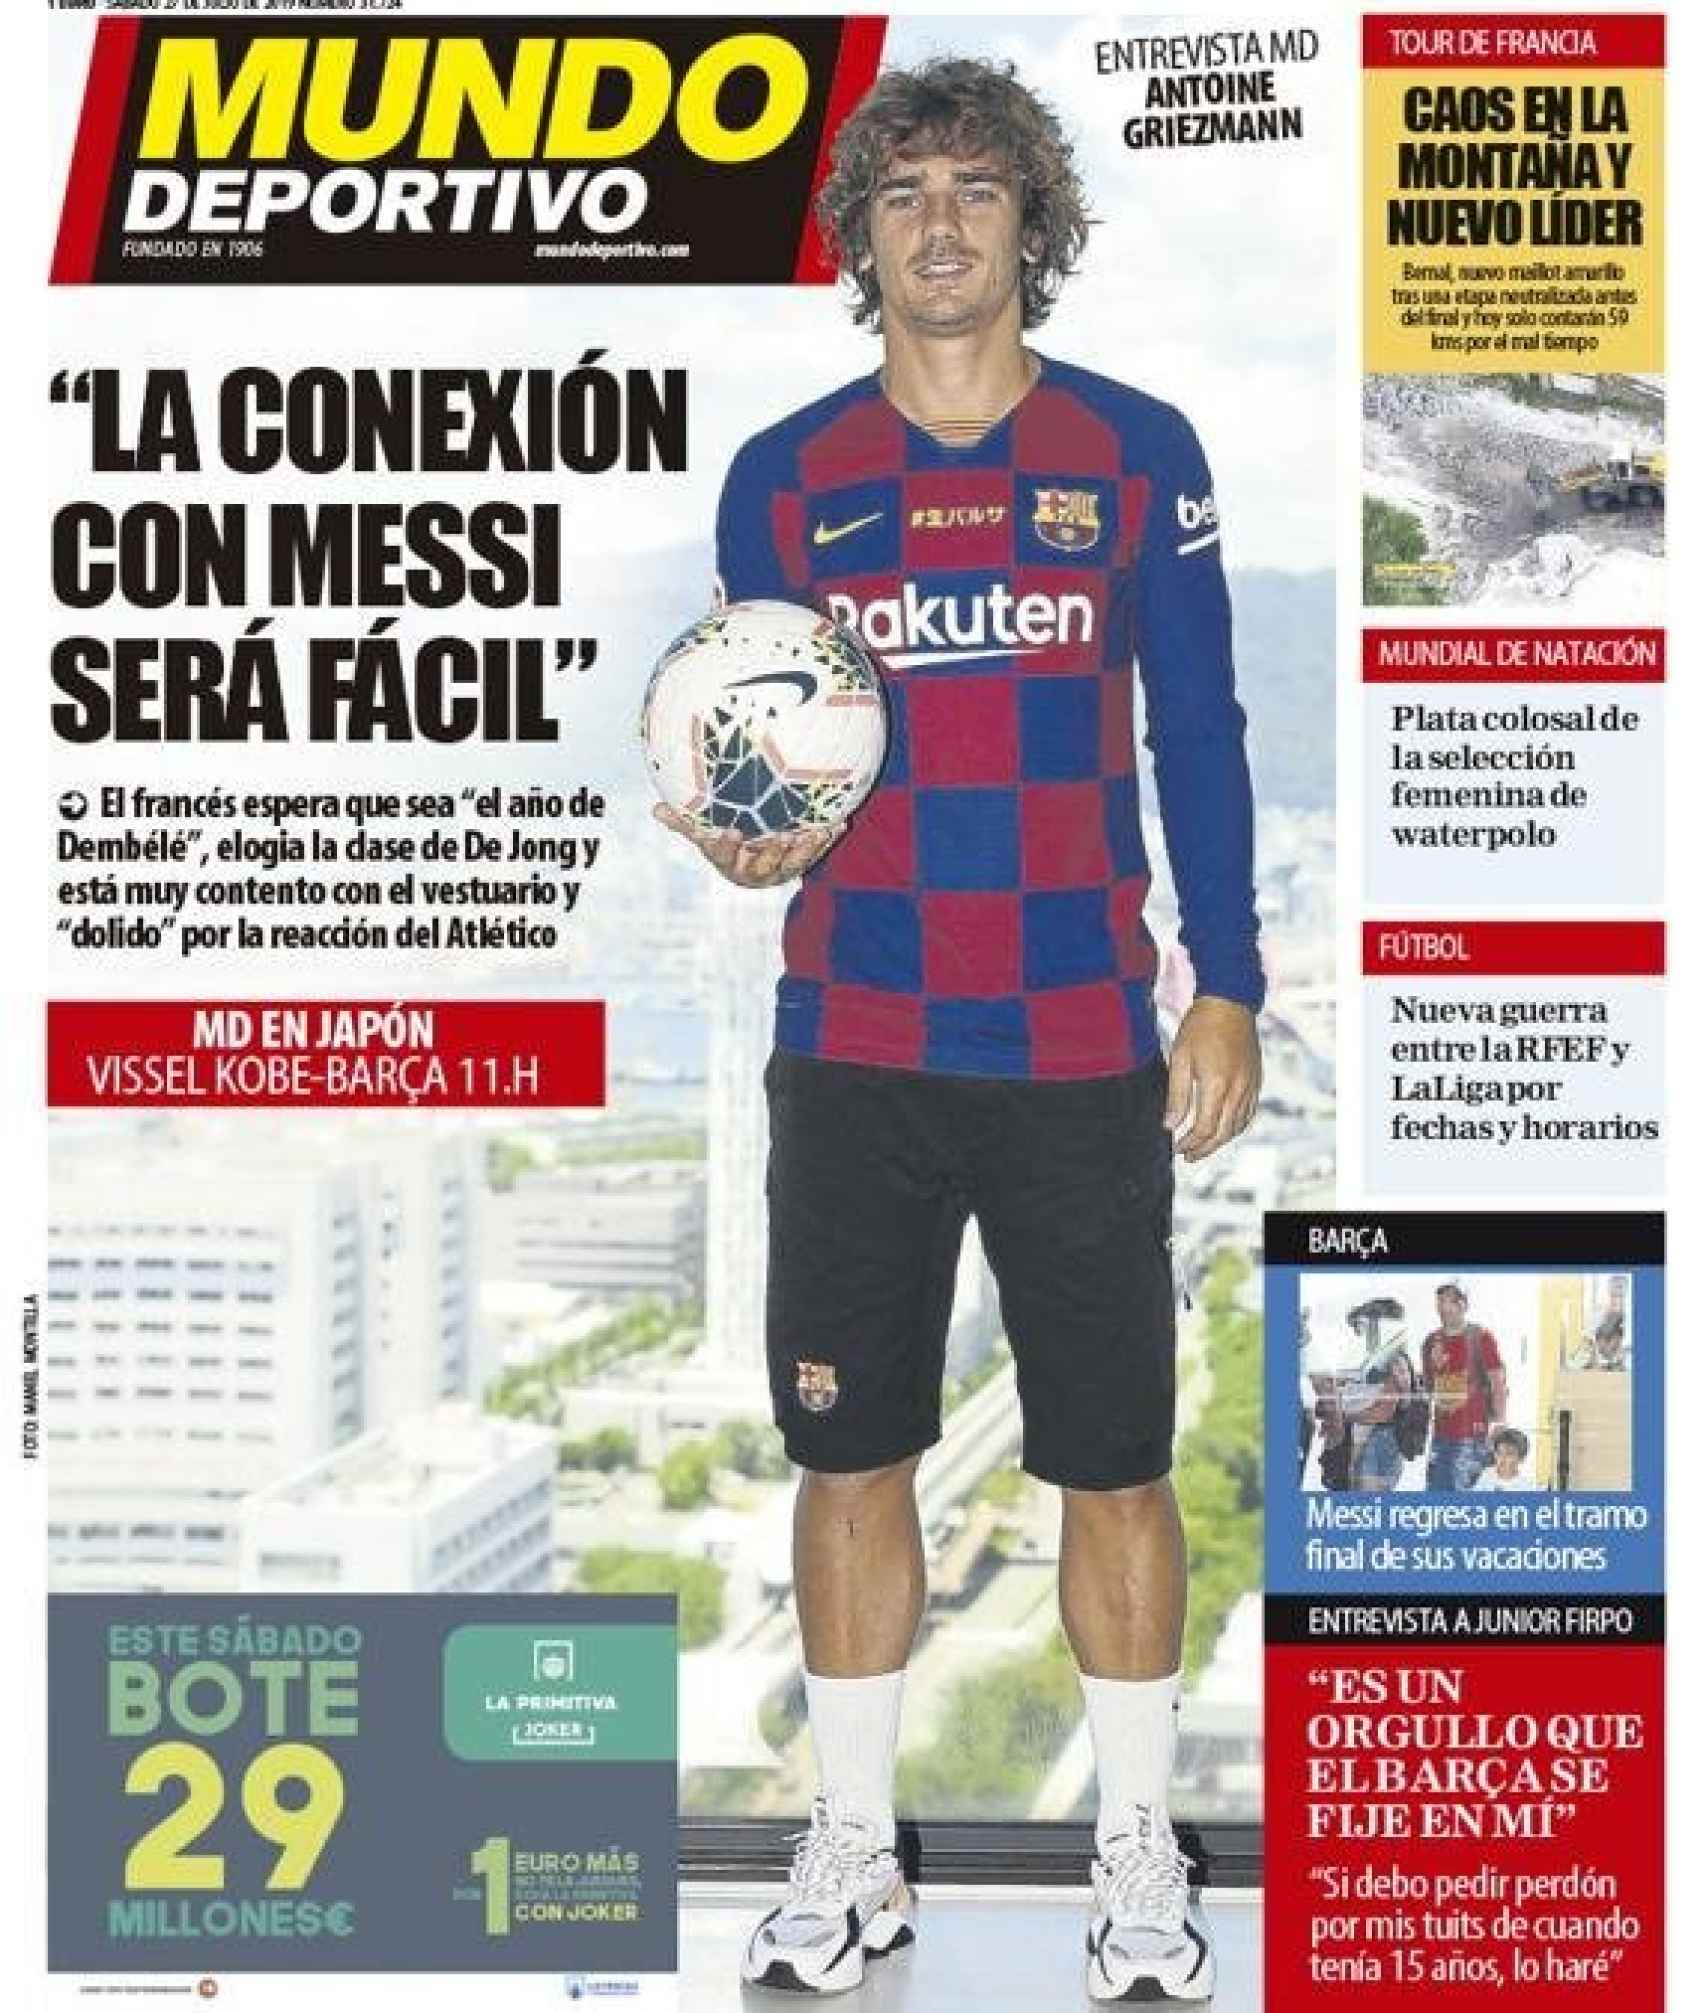 La portada del diario Mundo Deportivo (27/07/2019)